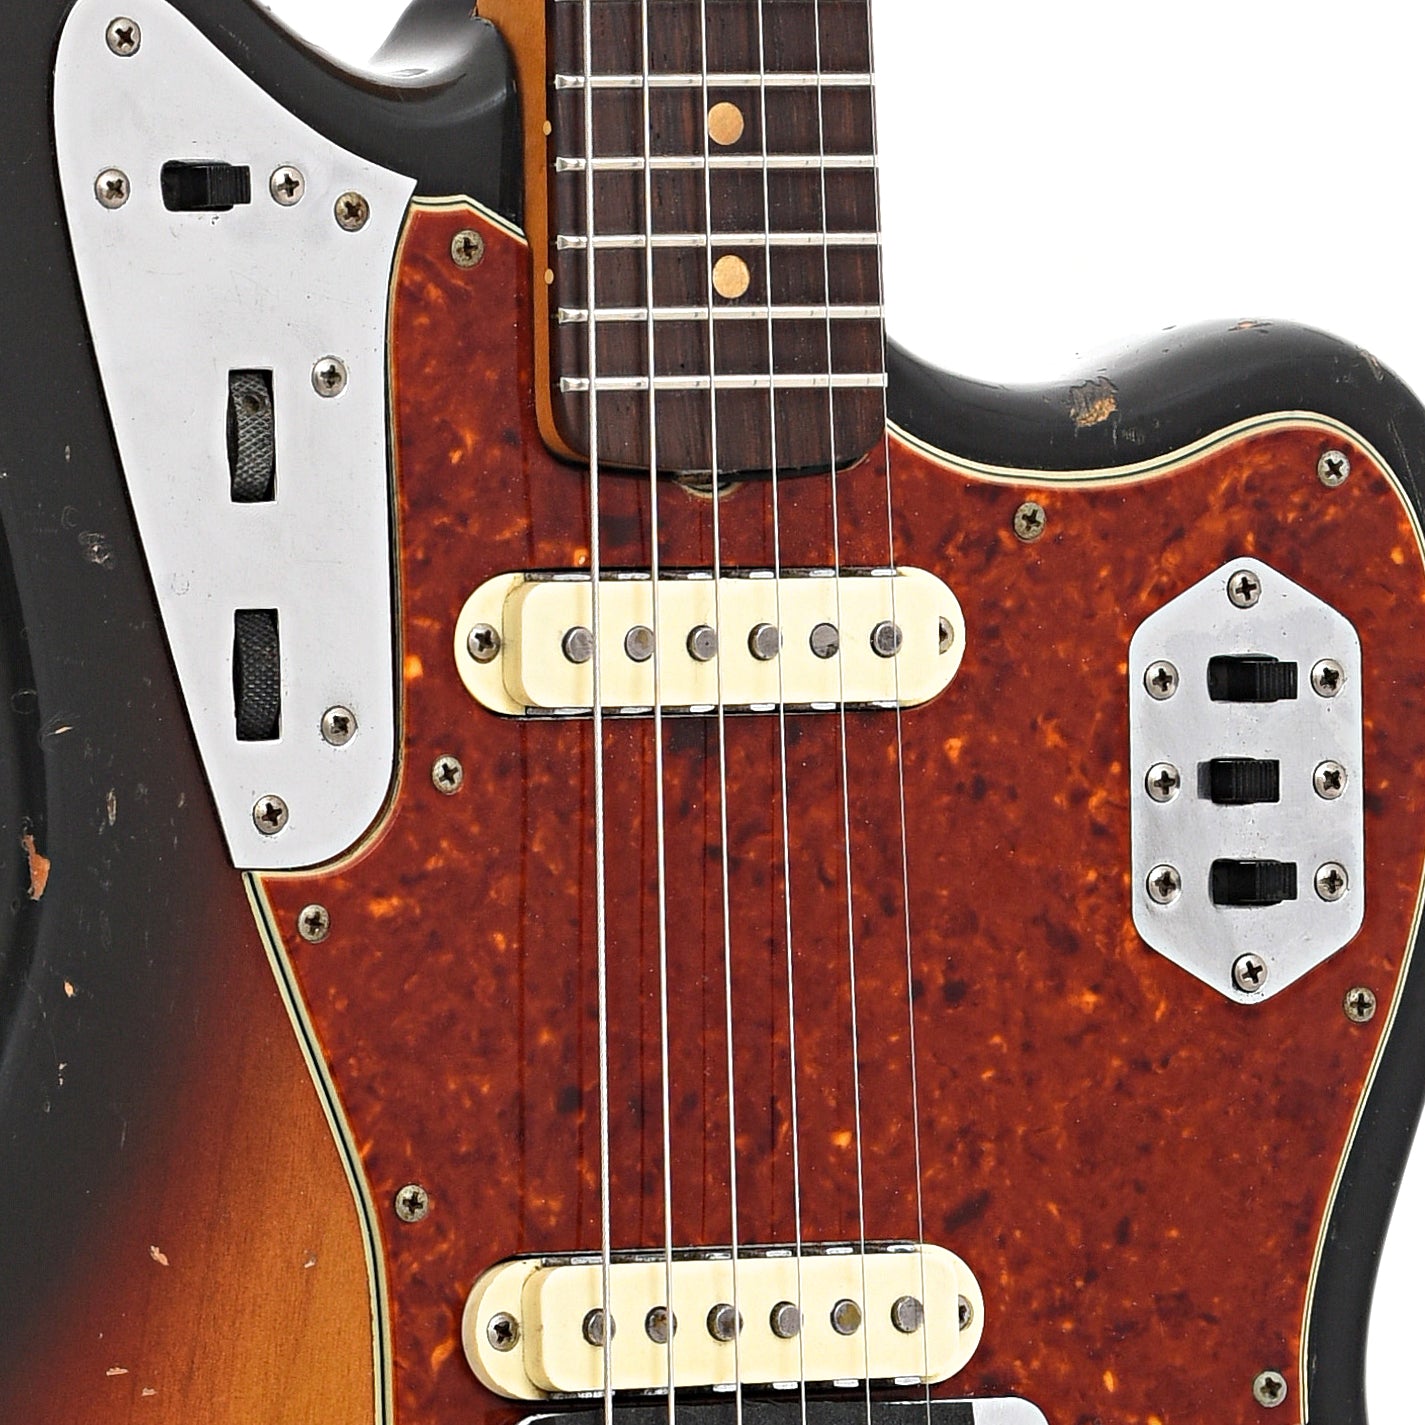 Pickups of Fender Jaguar